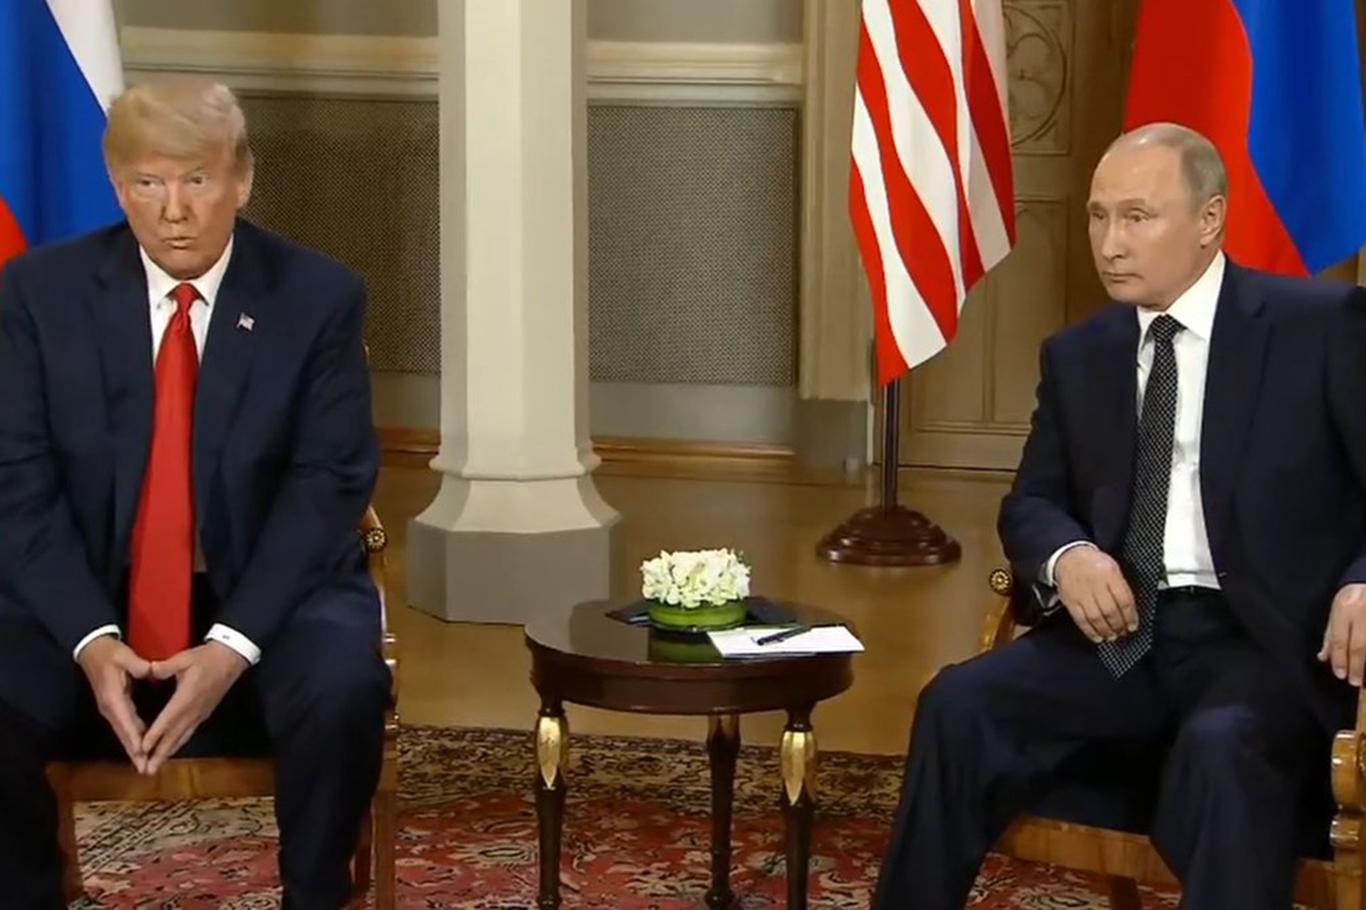 Putin ile Trump arasındaki zirve başladı